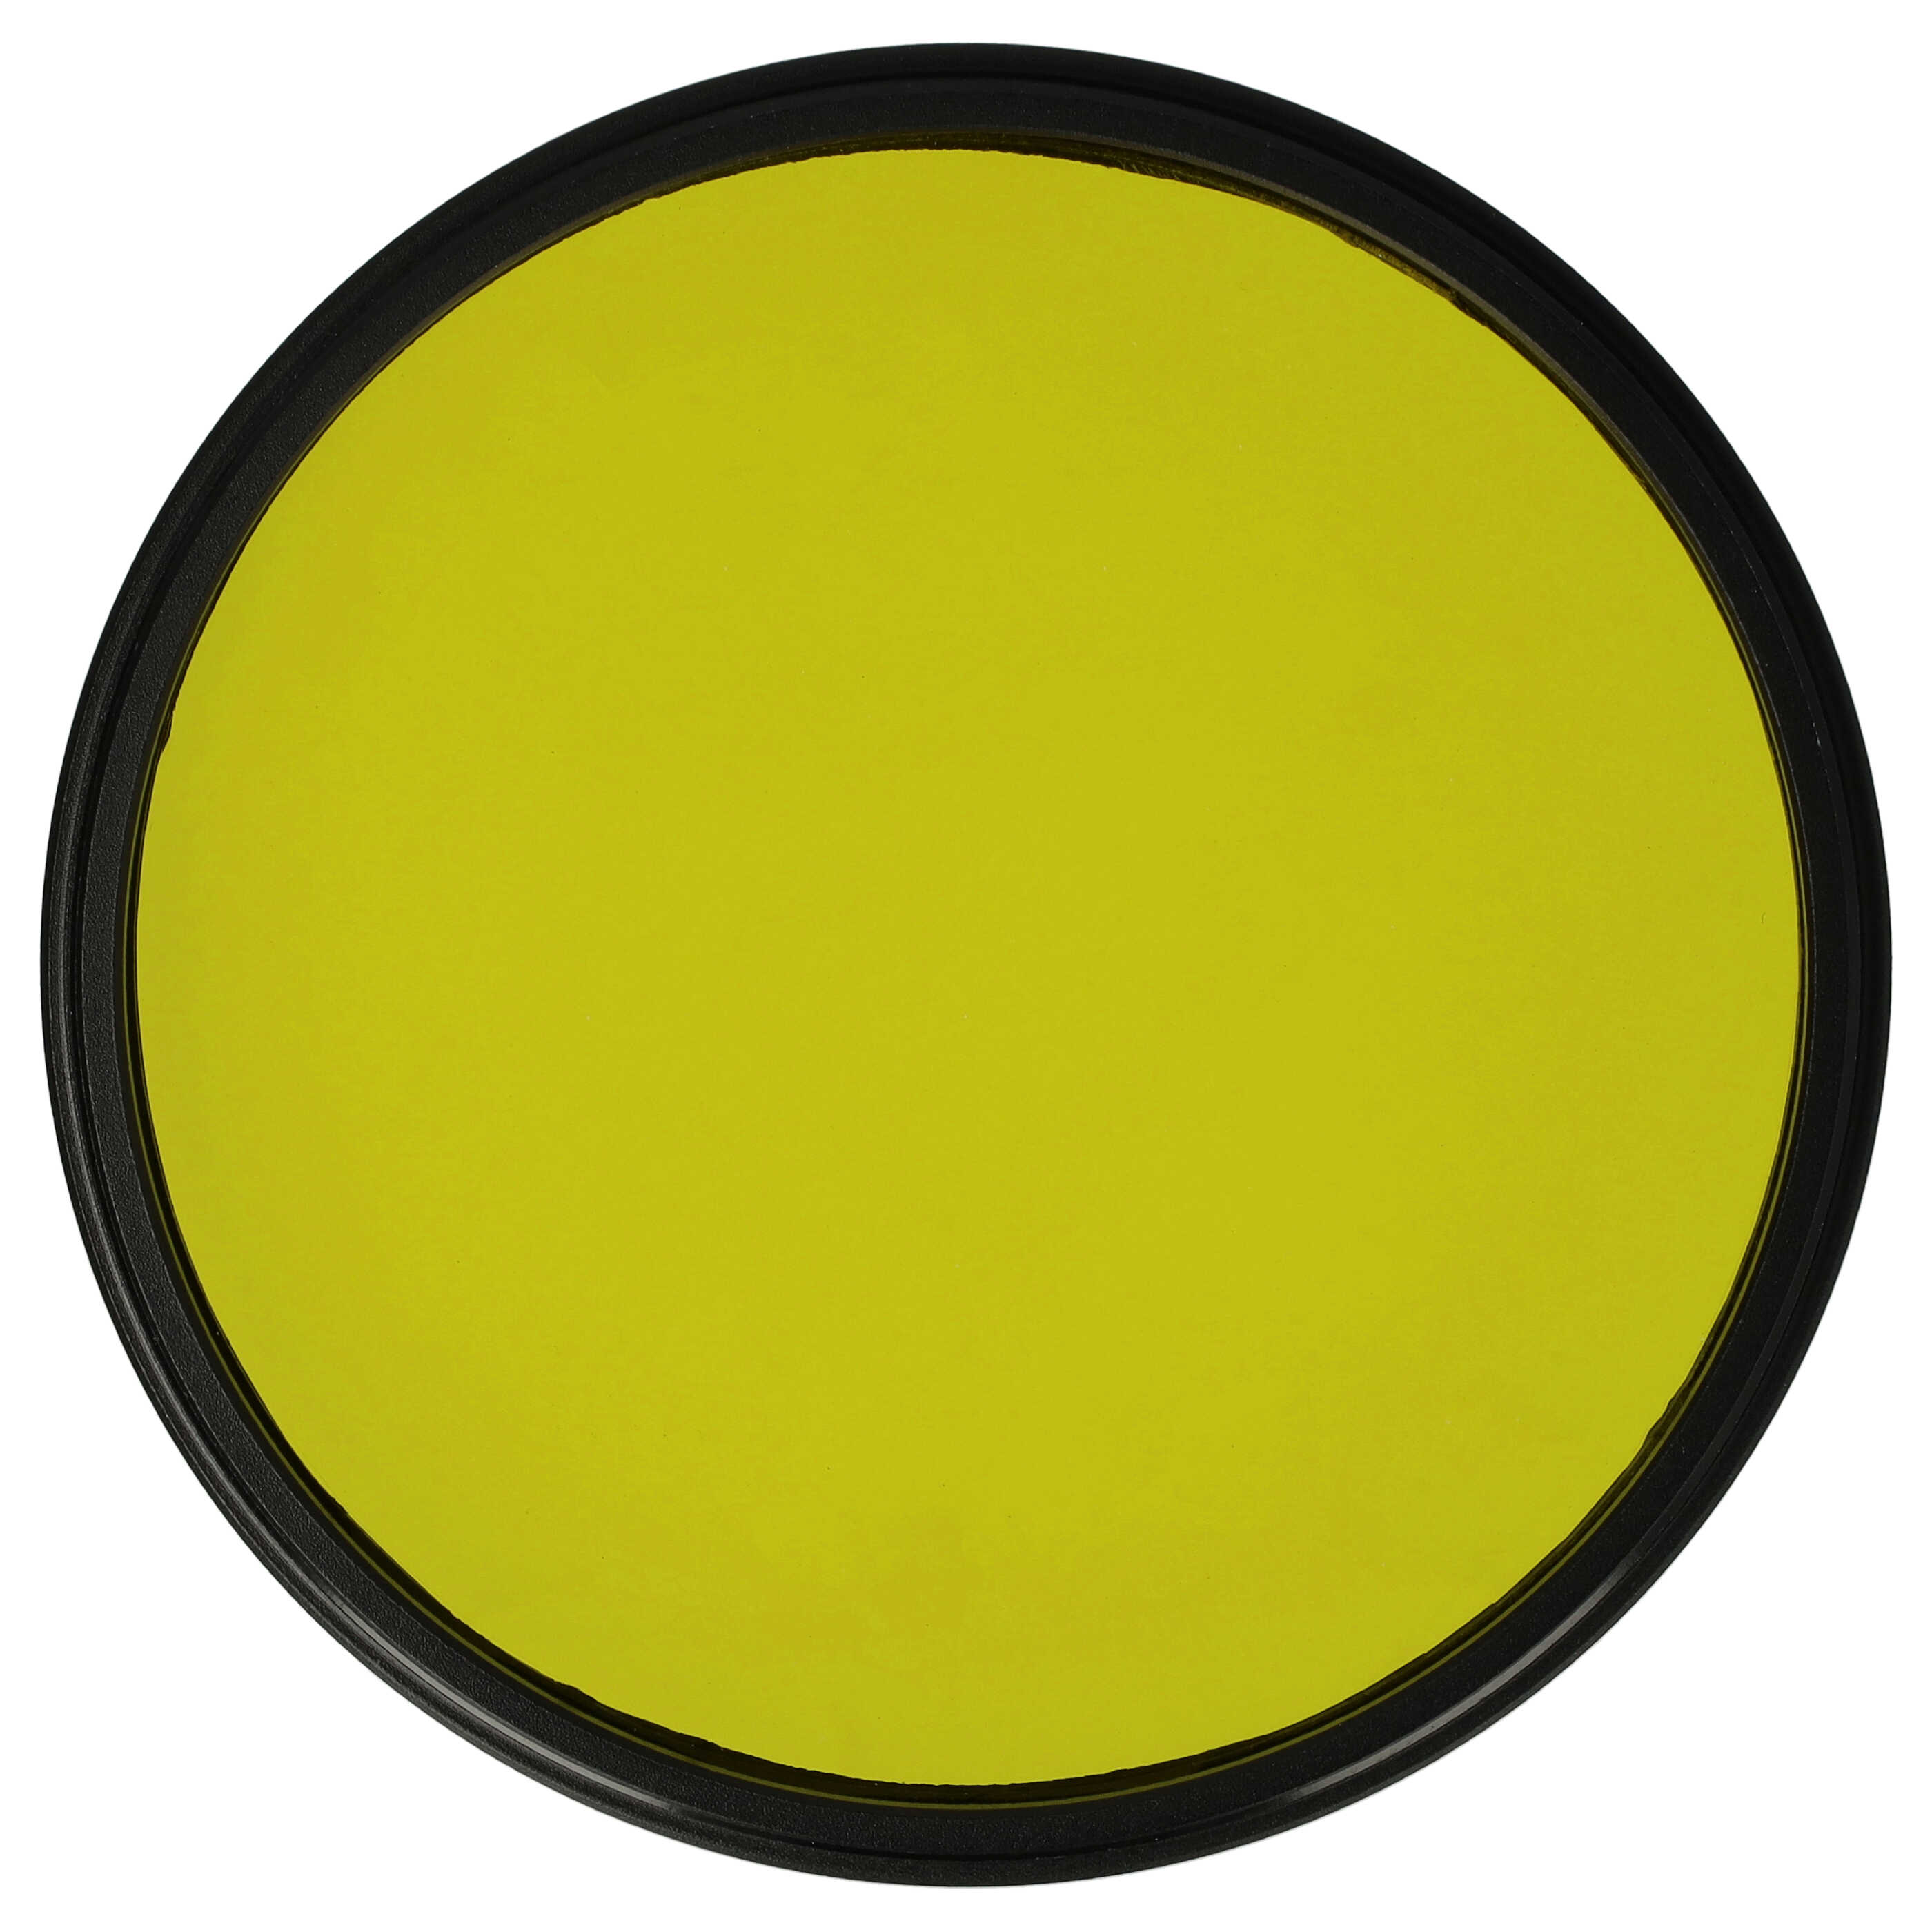 Filtro de color para objetivo de cámara con rosca de filtro de 72 mm - Filtro amarillo